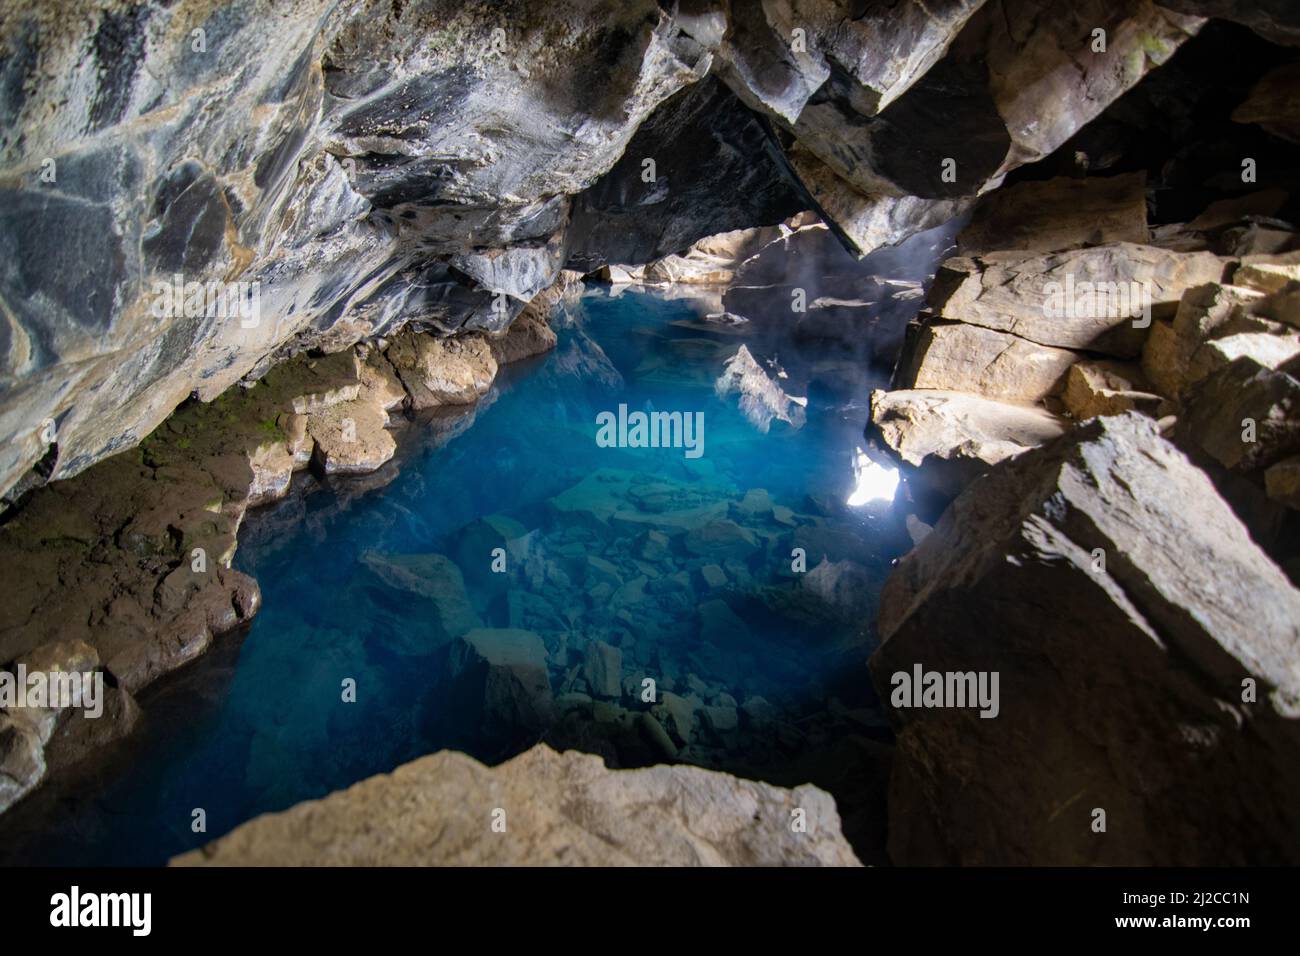 Grjótagjá grotta in Islanda Foto Stock